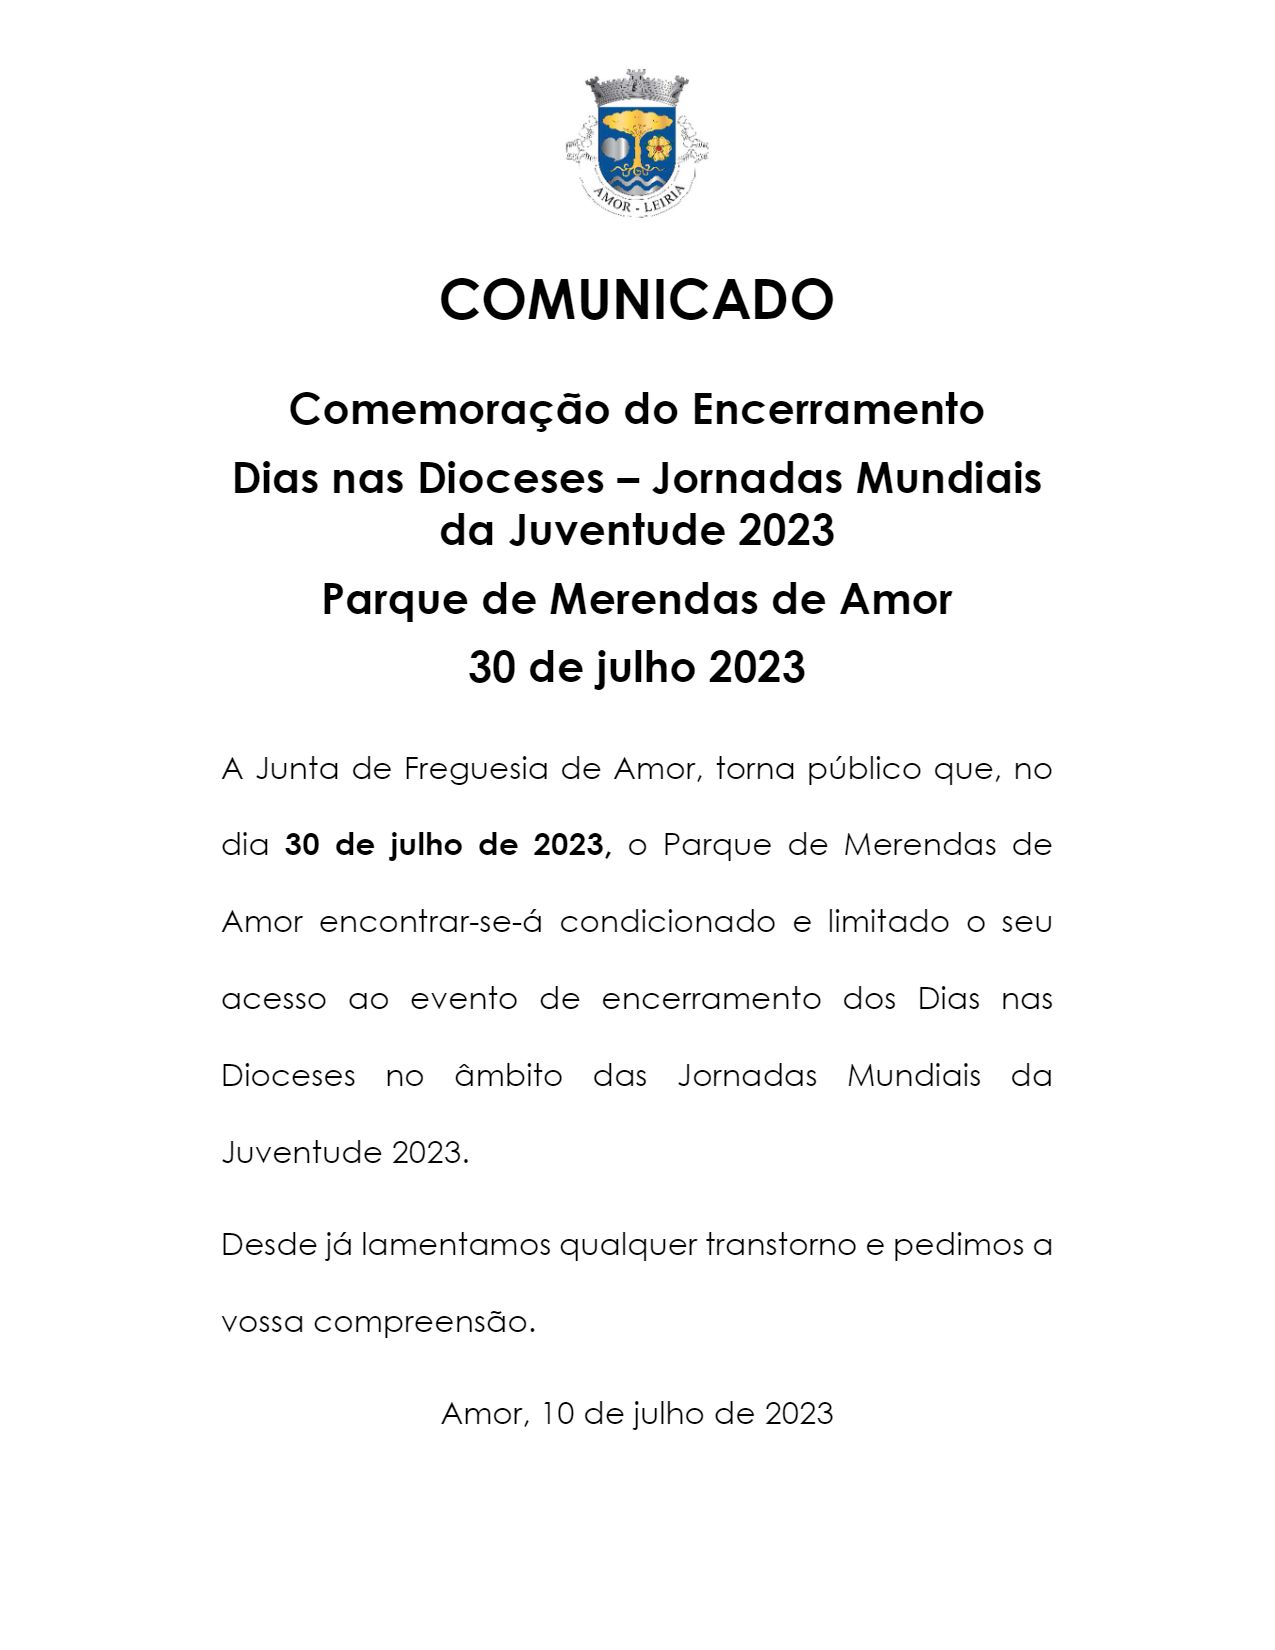 Imagem Comunicado: Parque de Merendas de Amor condicionado em 30 de julho - encerramento dos Dias nas Dioceses - Jornadas Mundiais da Juventude 2023